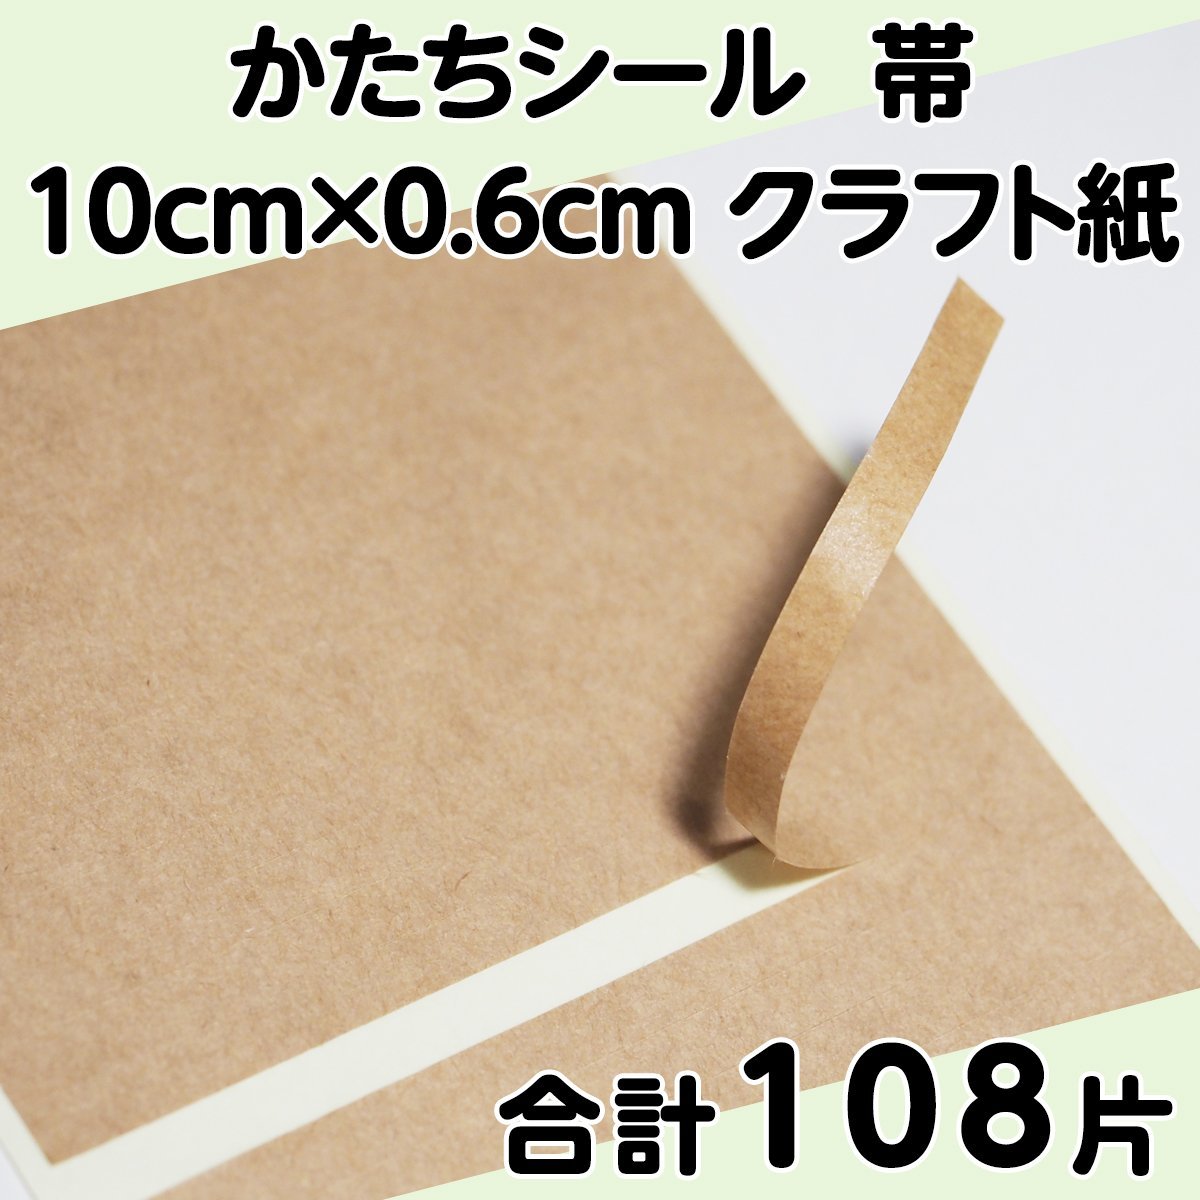 Полоса уплотнения уплотнения 10 см x 0,6 см крафтовая бумага 27 штук 4 листов всего 108 штук